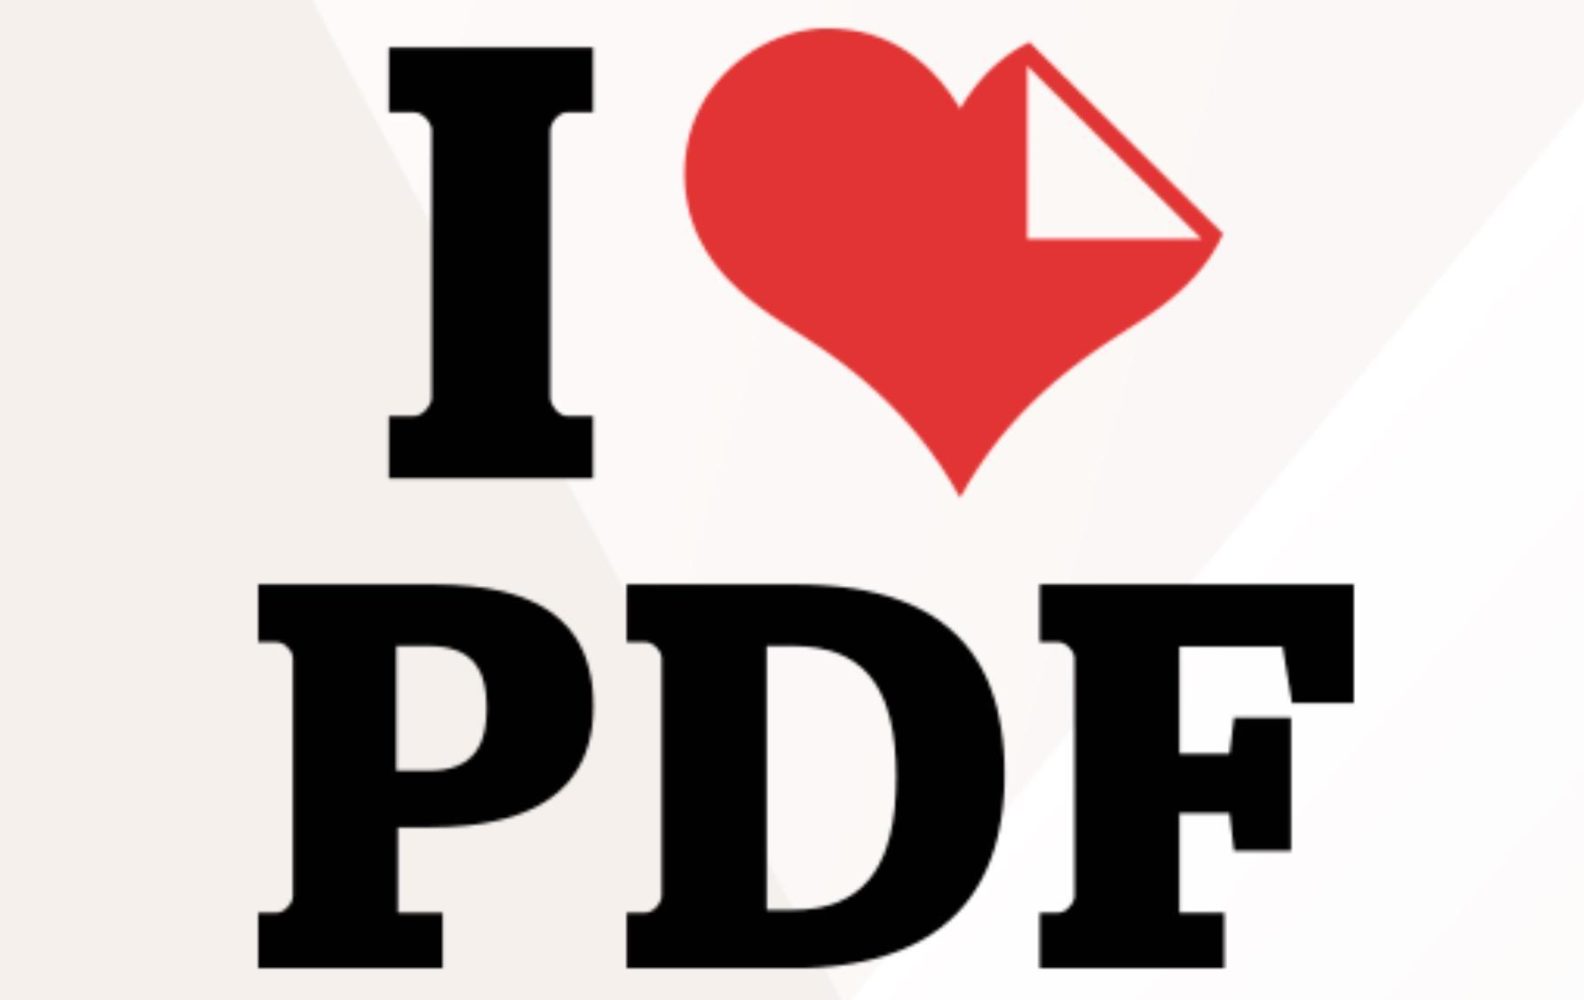 Love pdf com. I Love pdf. Я люблю pdf. Пдф лайф. Я люблю пдф i Love pdf.